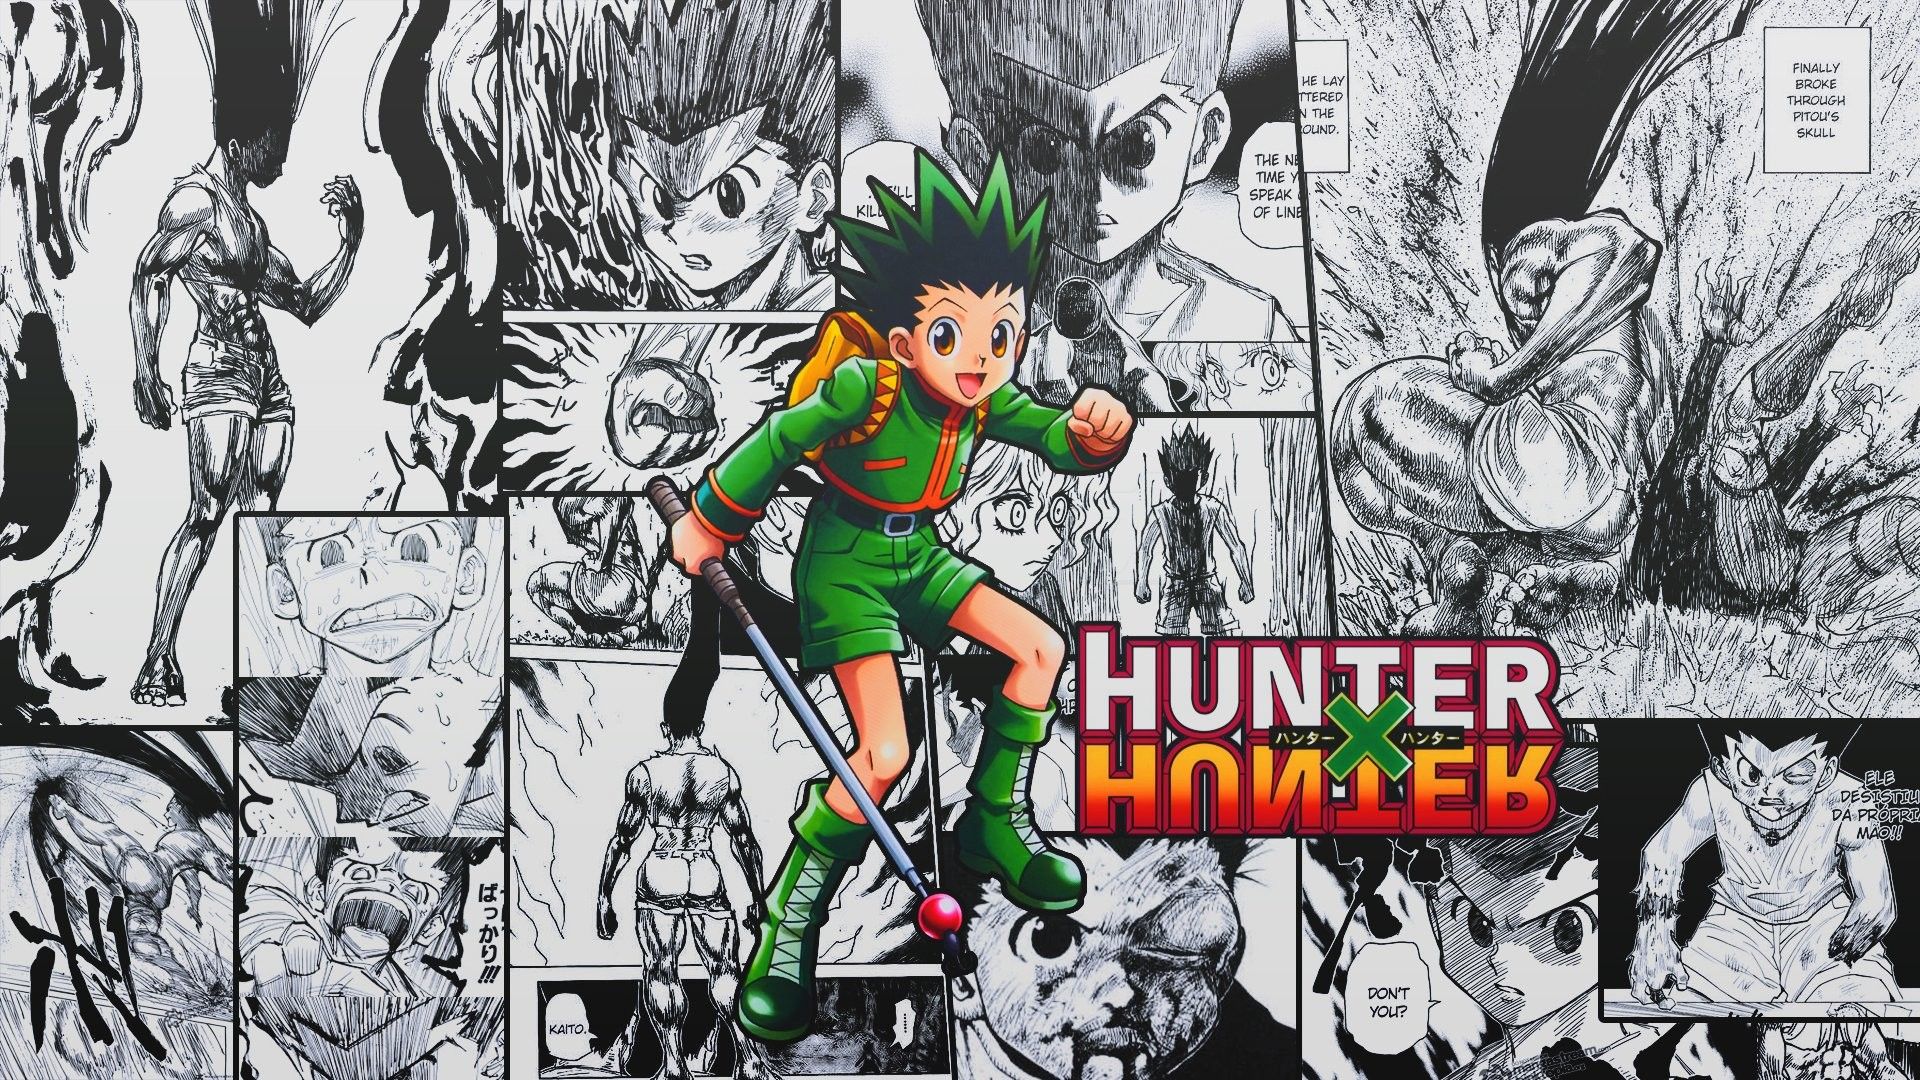 Hunter X Hunter Wallpaper